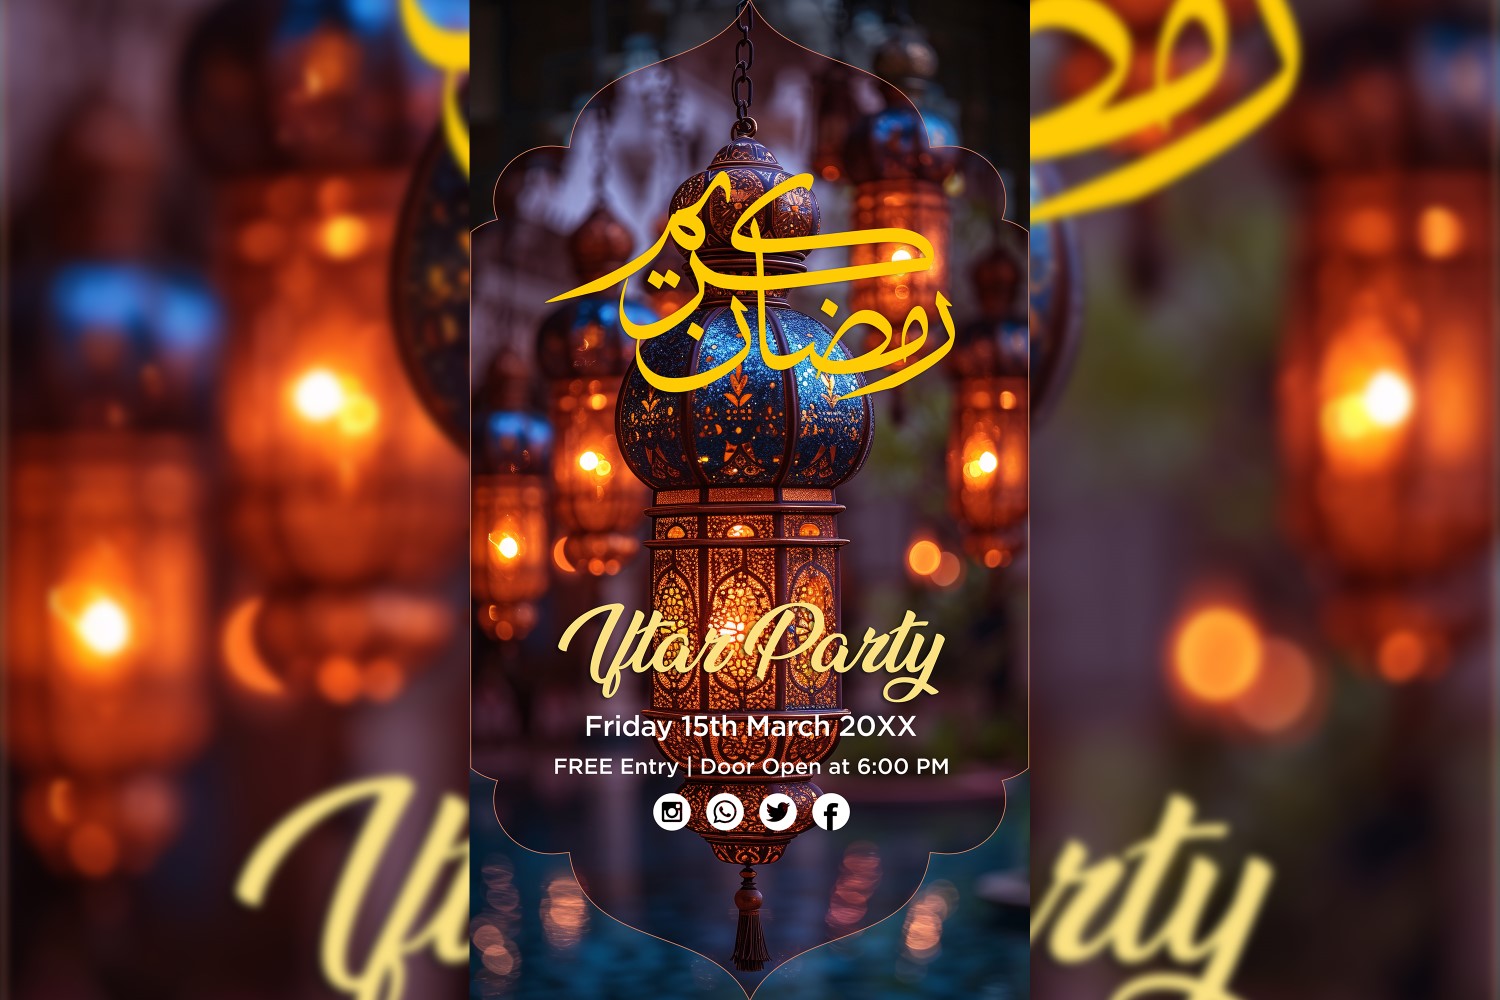 Ramadan Iftar Party Poster Design Template 06